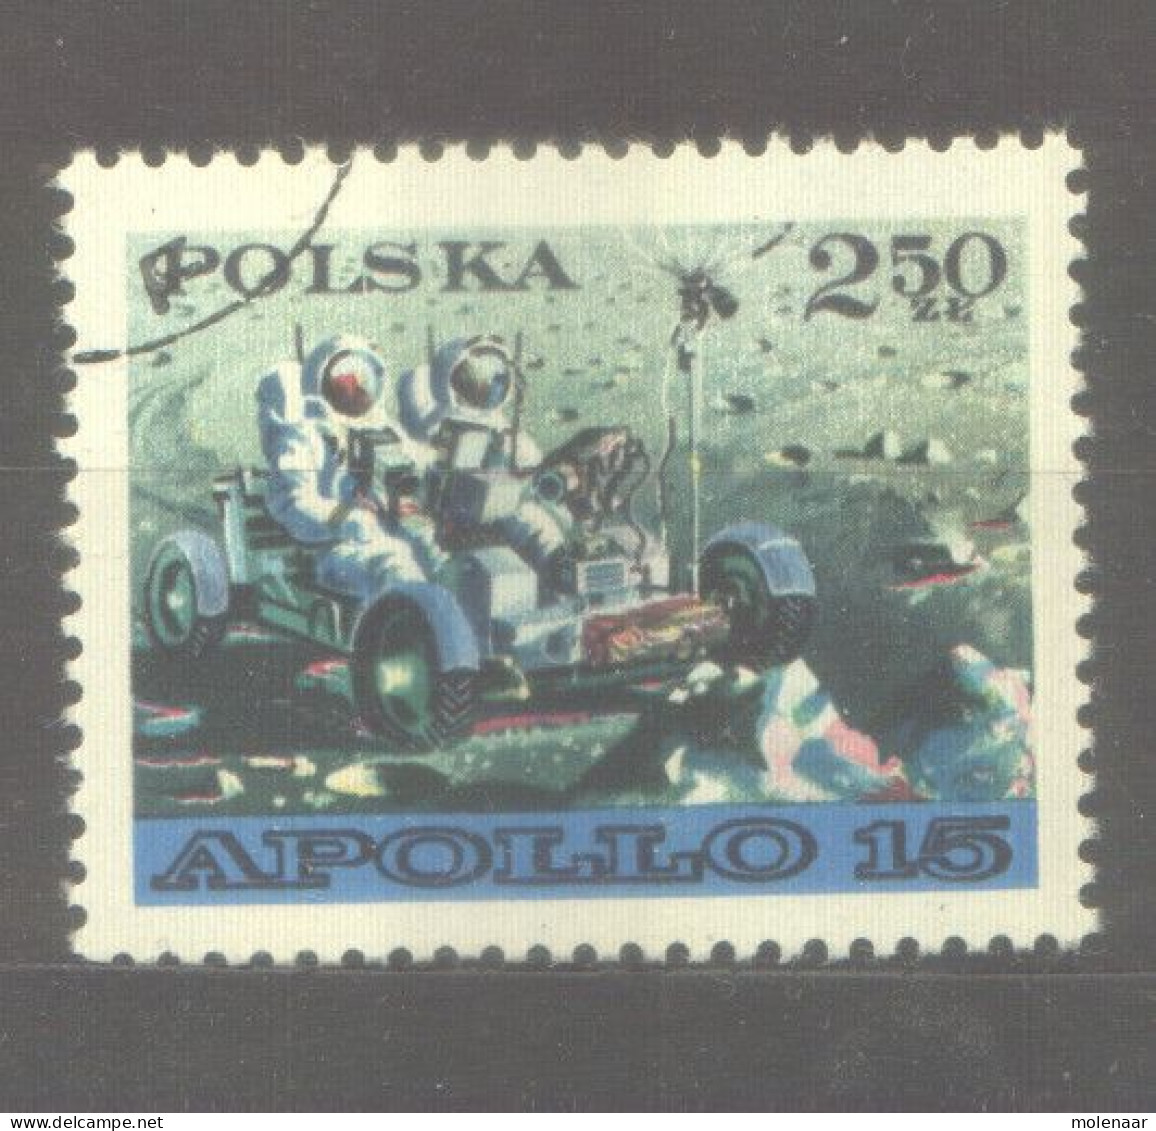 Postzegels > Europa > Polen > 1944-.... Republiek > 1971-80 > Gebruikt 2119 (12060) - Oblitérés